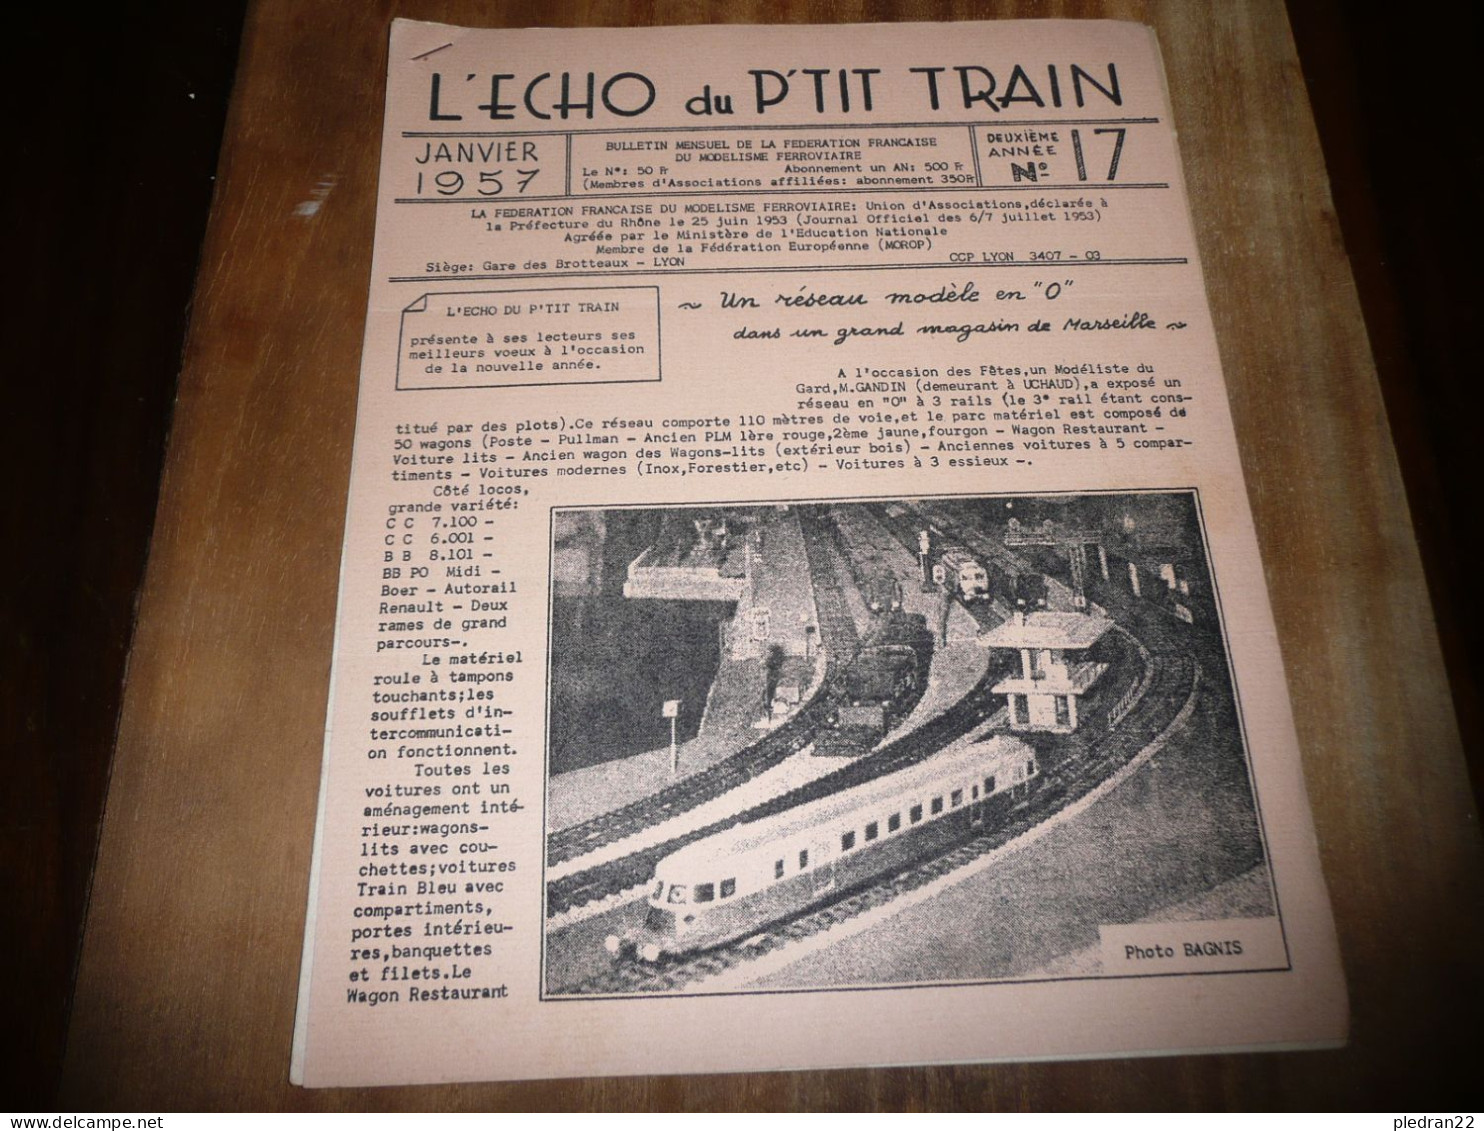 CHEMINS DE FER REVUE L'ECHO DU P'TIT TRAIN N° 17 JANVIER 1957 MODELISME FERROVIAIRE GARE DES BROTTEAUX LYON - Bahnwesen & Tramways